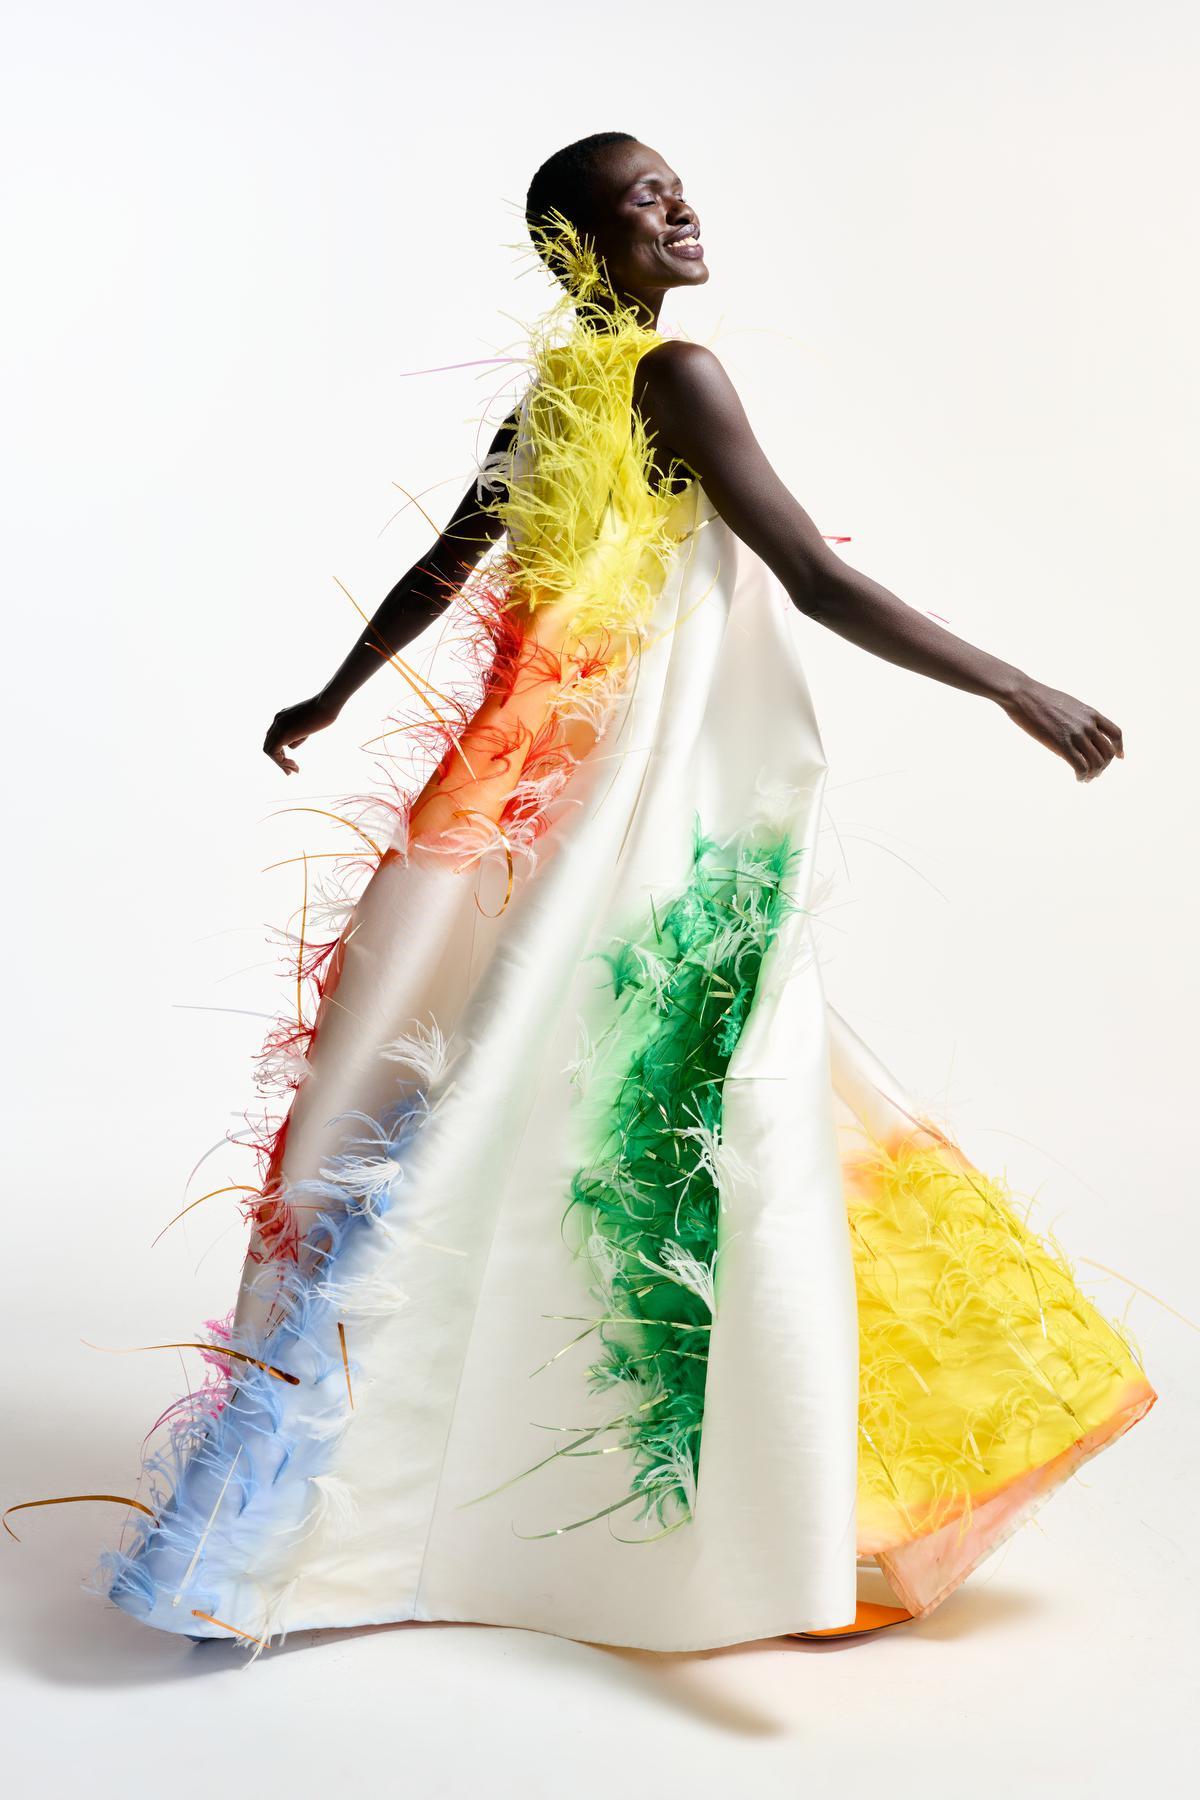 De impressionante jurk met kleurige veertjes, de blikvanger van de collectie, is een eerste creatie van Edouard Vermeulen in samenwerking met Christophe Coppens.© Natan